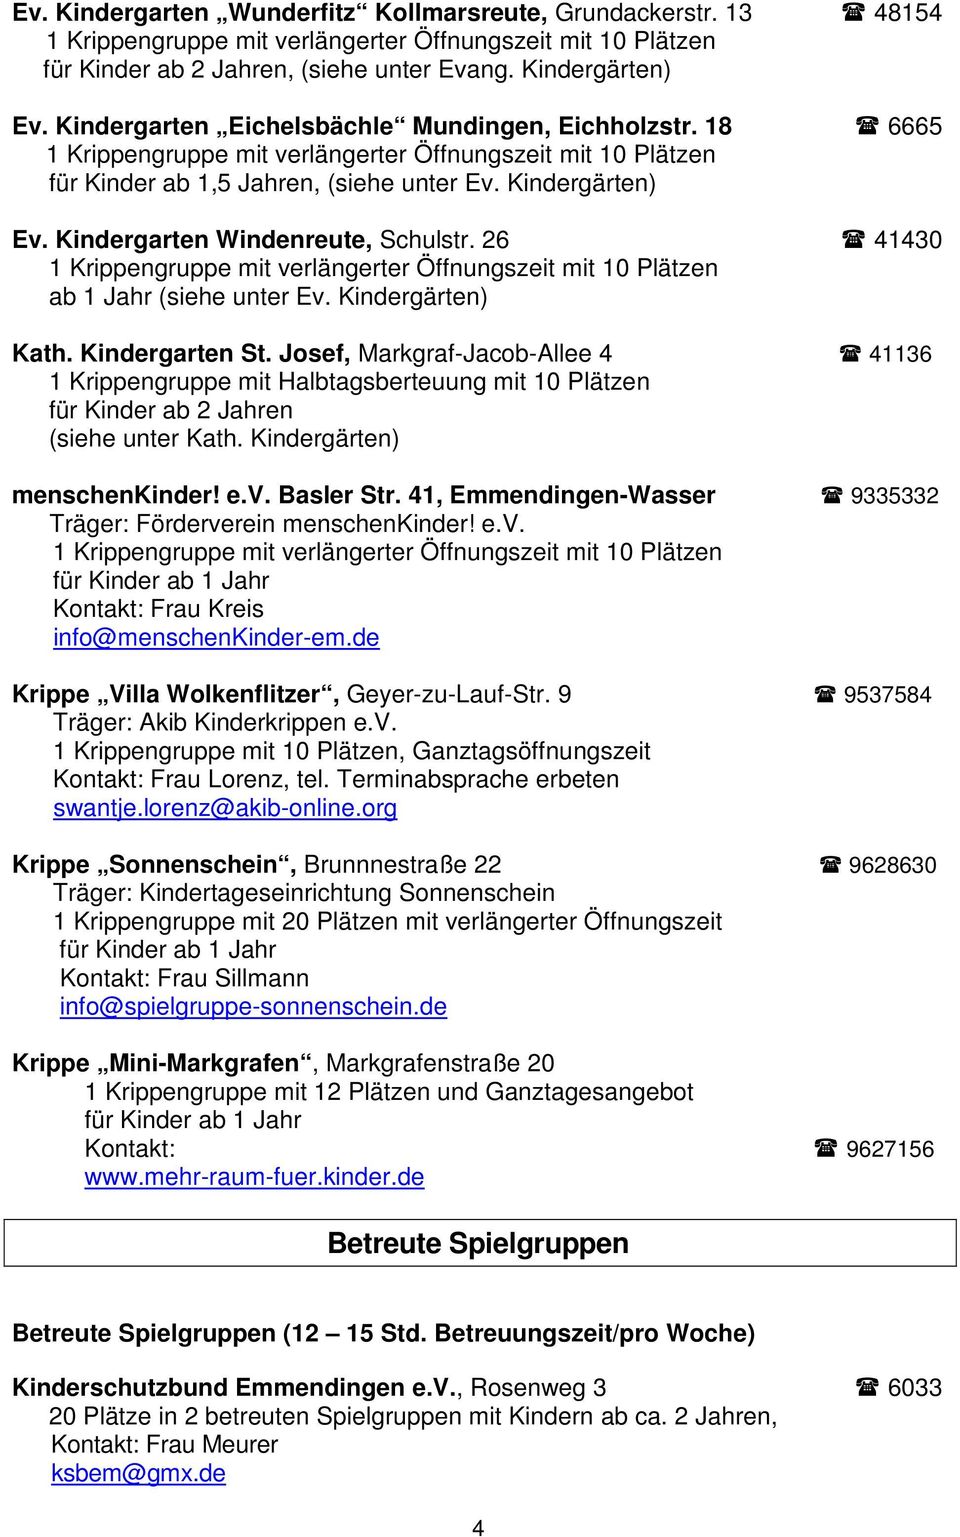 Josef, Markgraf-Jacob-Allee 4 41136 1 Krippengruppe mit Halbtagsberteuung mit 10 Plätzen für Kinder ab 2 Jahren (siehe unter Kath. Kindergärten) menschenkinder! e.v. Basler Str.